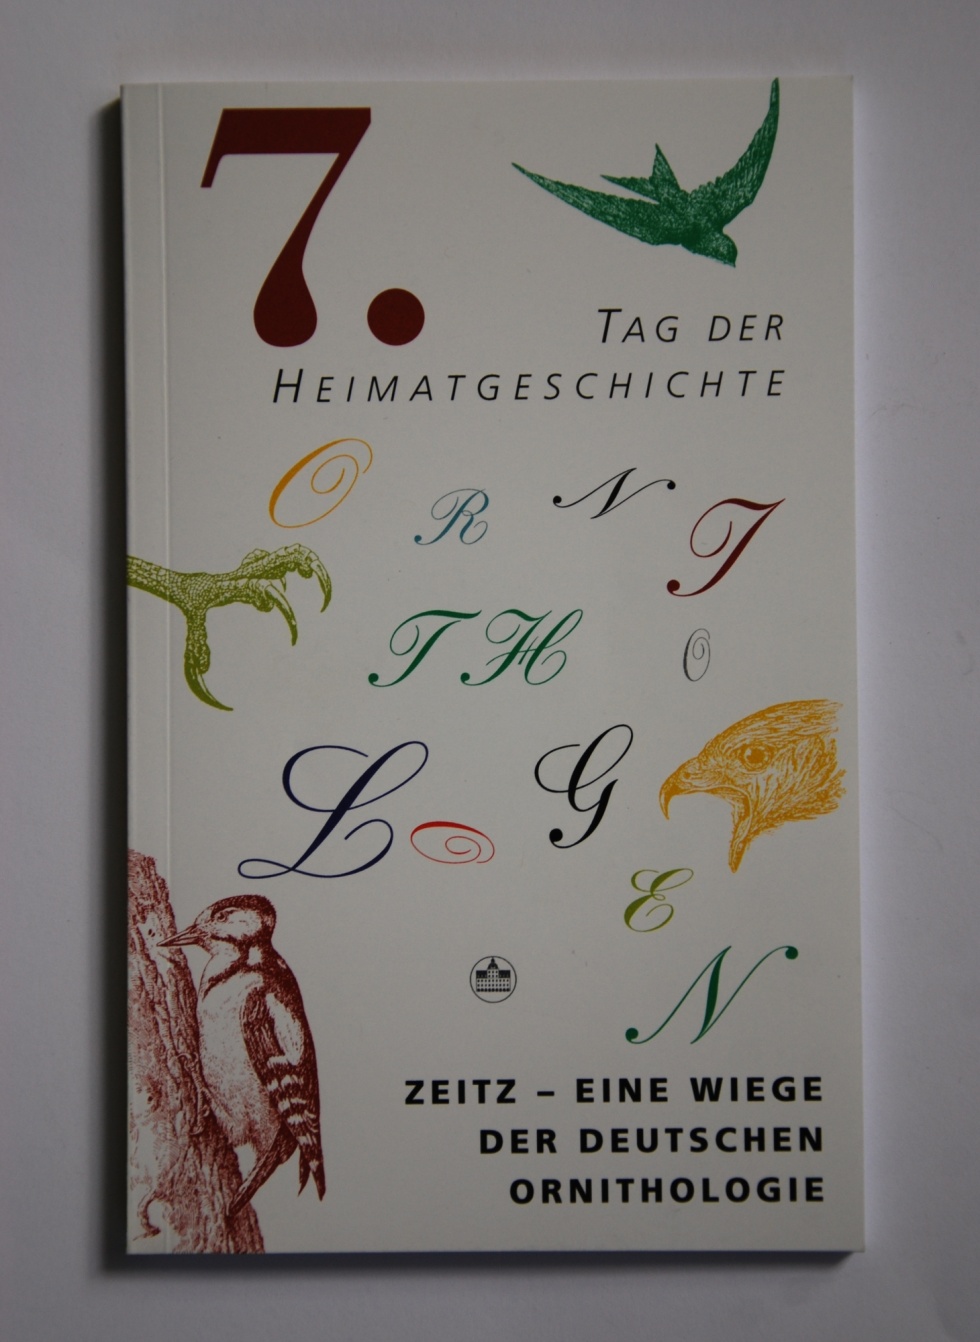 Zeitz - Eine Wiege der deutschen Ornithologie (Museum Schloss Moritzburg Zeitz CC BY-NC-SA)